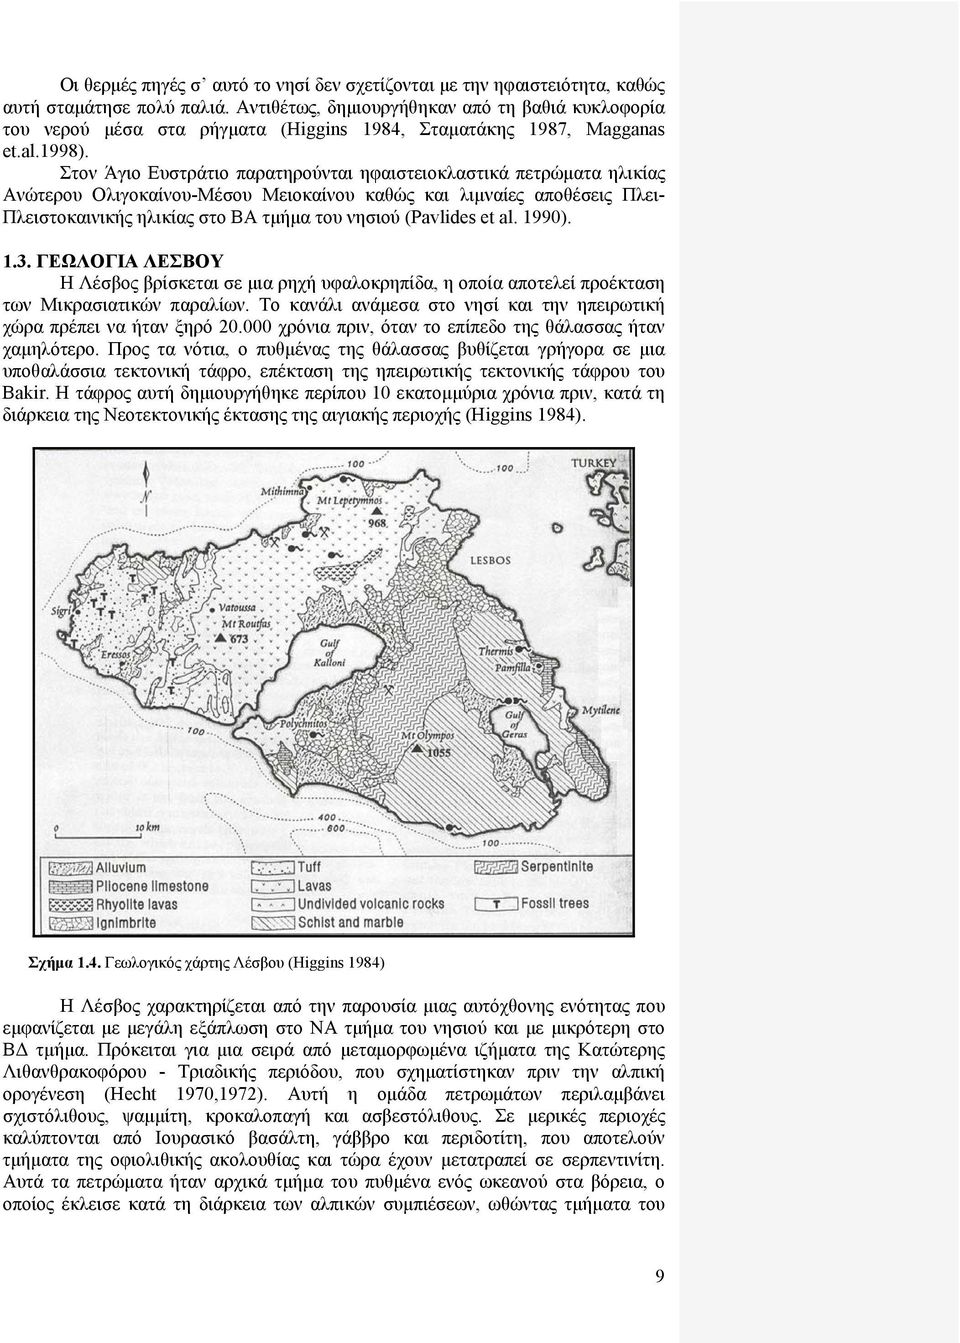 Στον Άγιο Ευστράτιο παρατηρούνται ηφαιστειοκλαστικά πετρώματα ηλικίας Ανώτερου Ολιγοκαίνου-Μέσου Μειοκαίνου καθώς και λιμναίες αποθέσεις Πλει- Πλειστοκαινικής ηλικίας στο ΒΑ τμήμα του νησιού